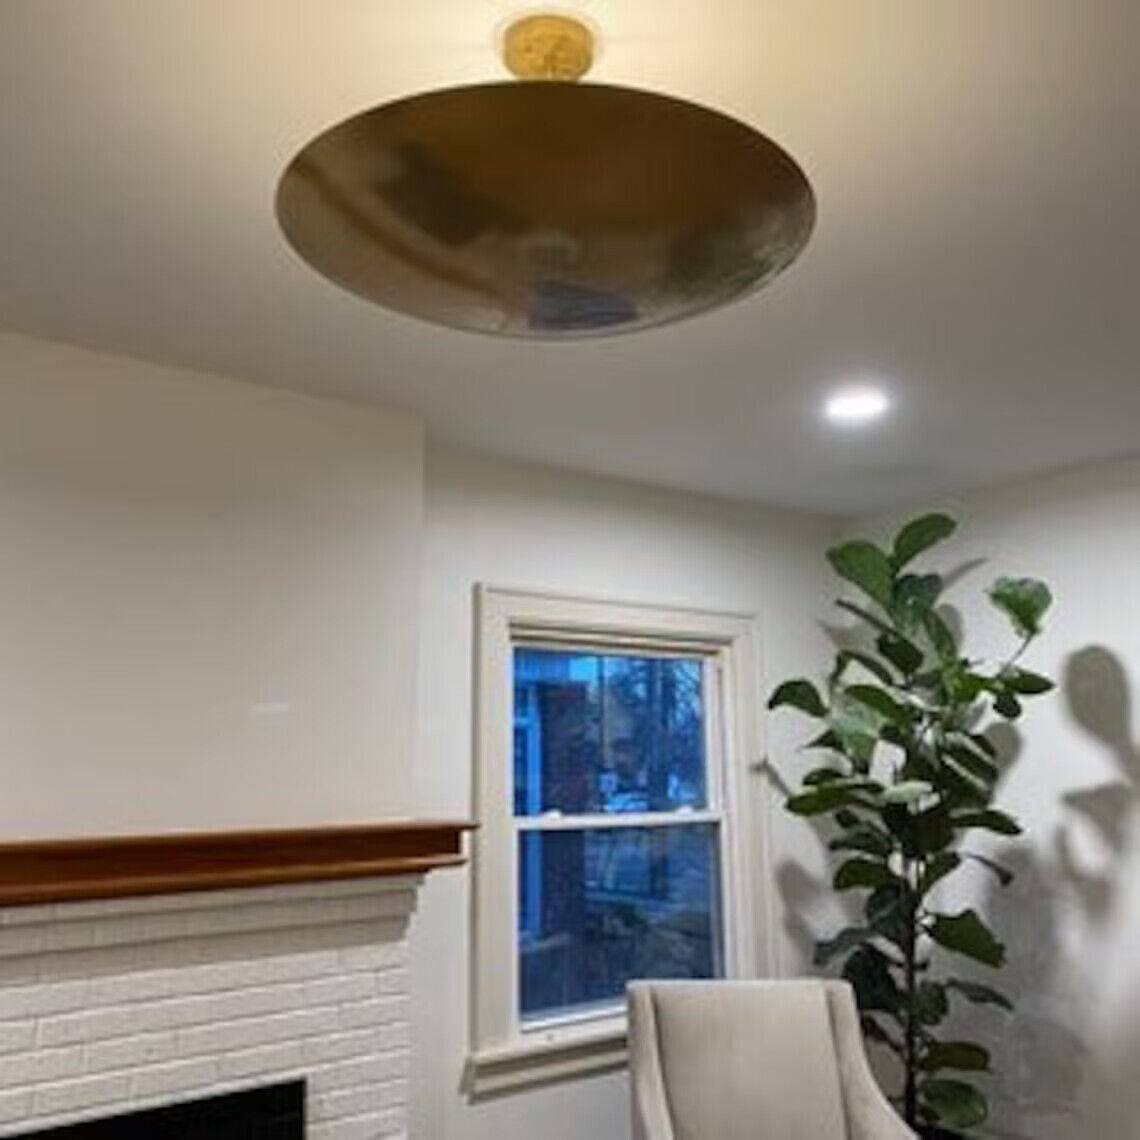 6 Light Elegant Ceiling Flushmount light Pendant Mid Century Modern Raw Brass